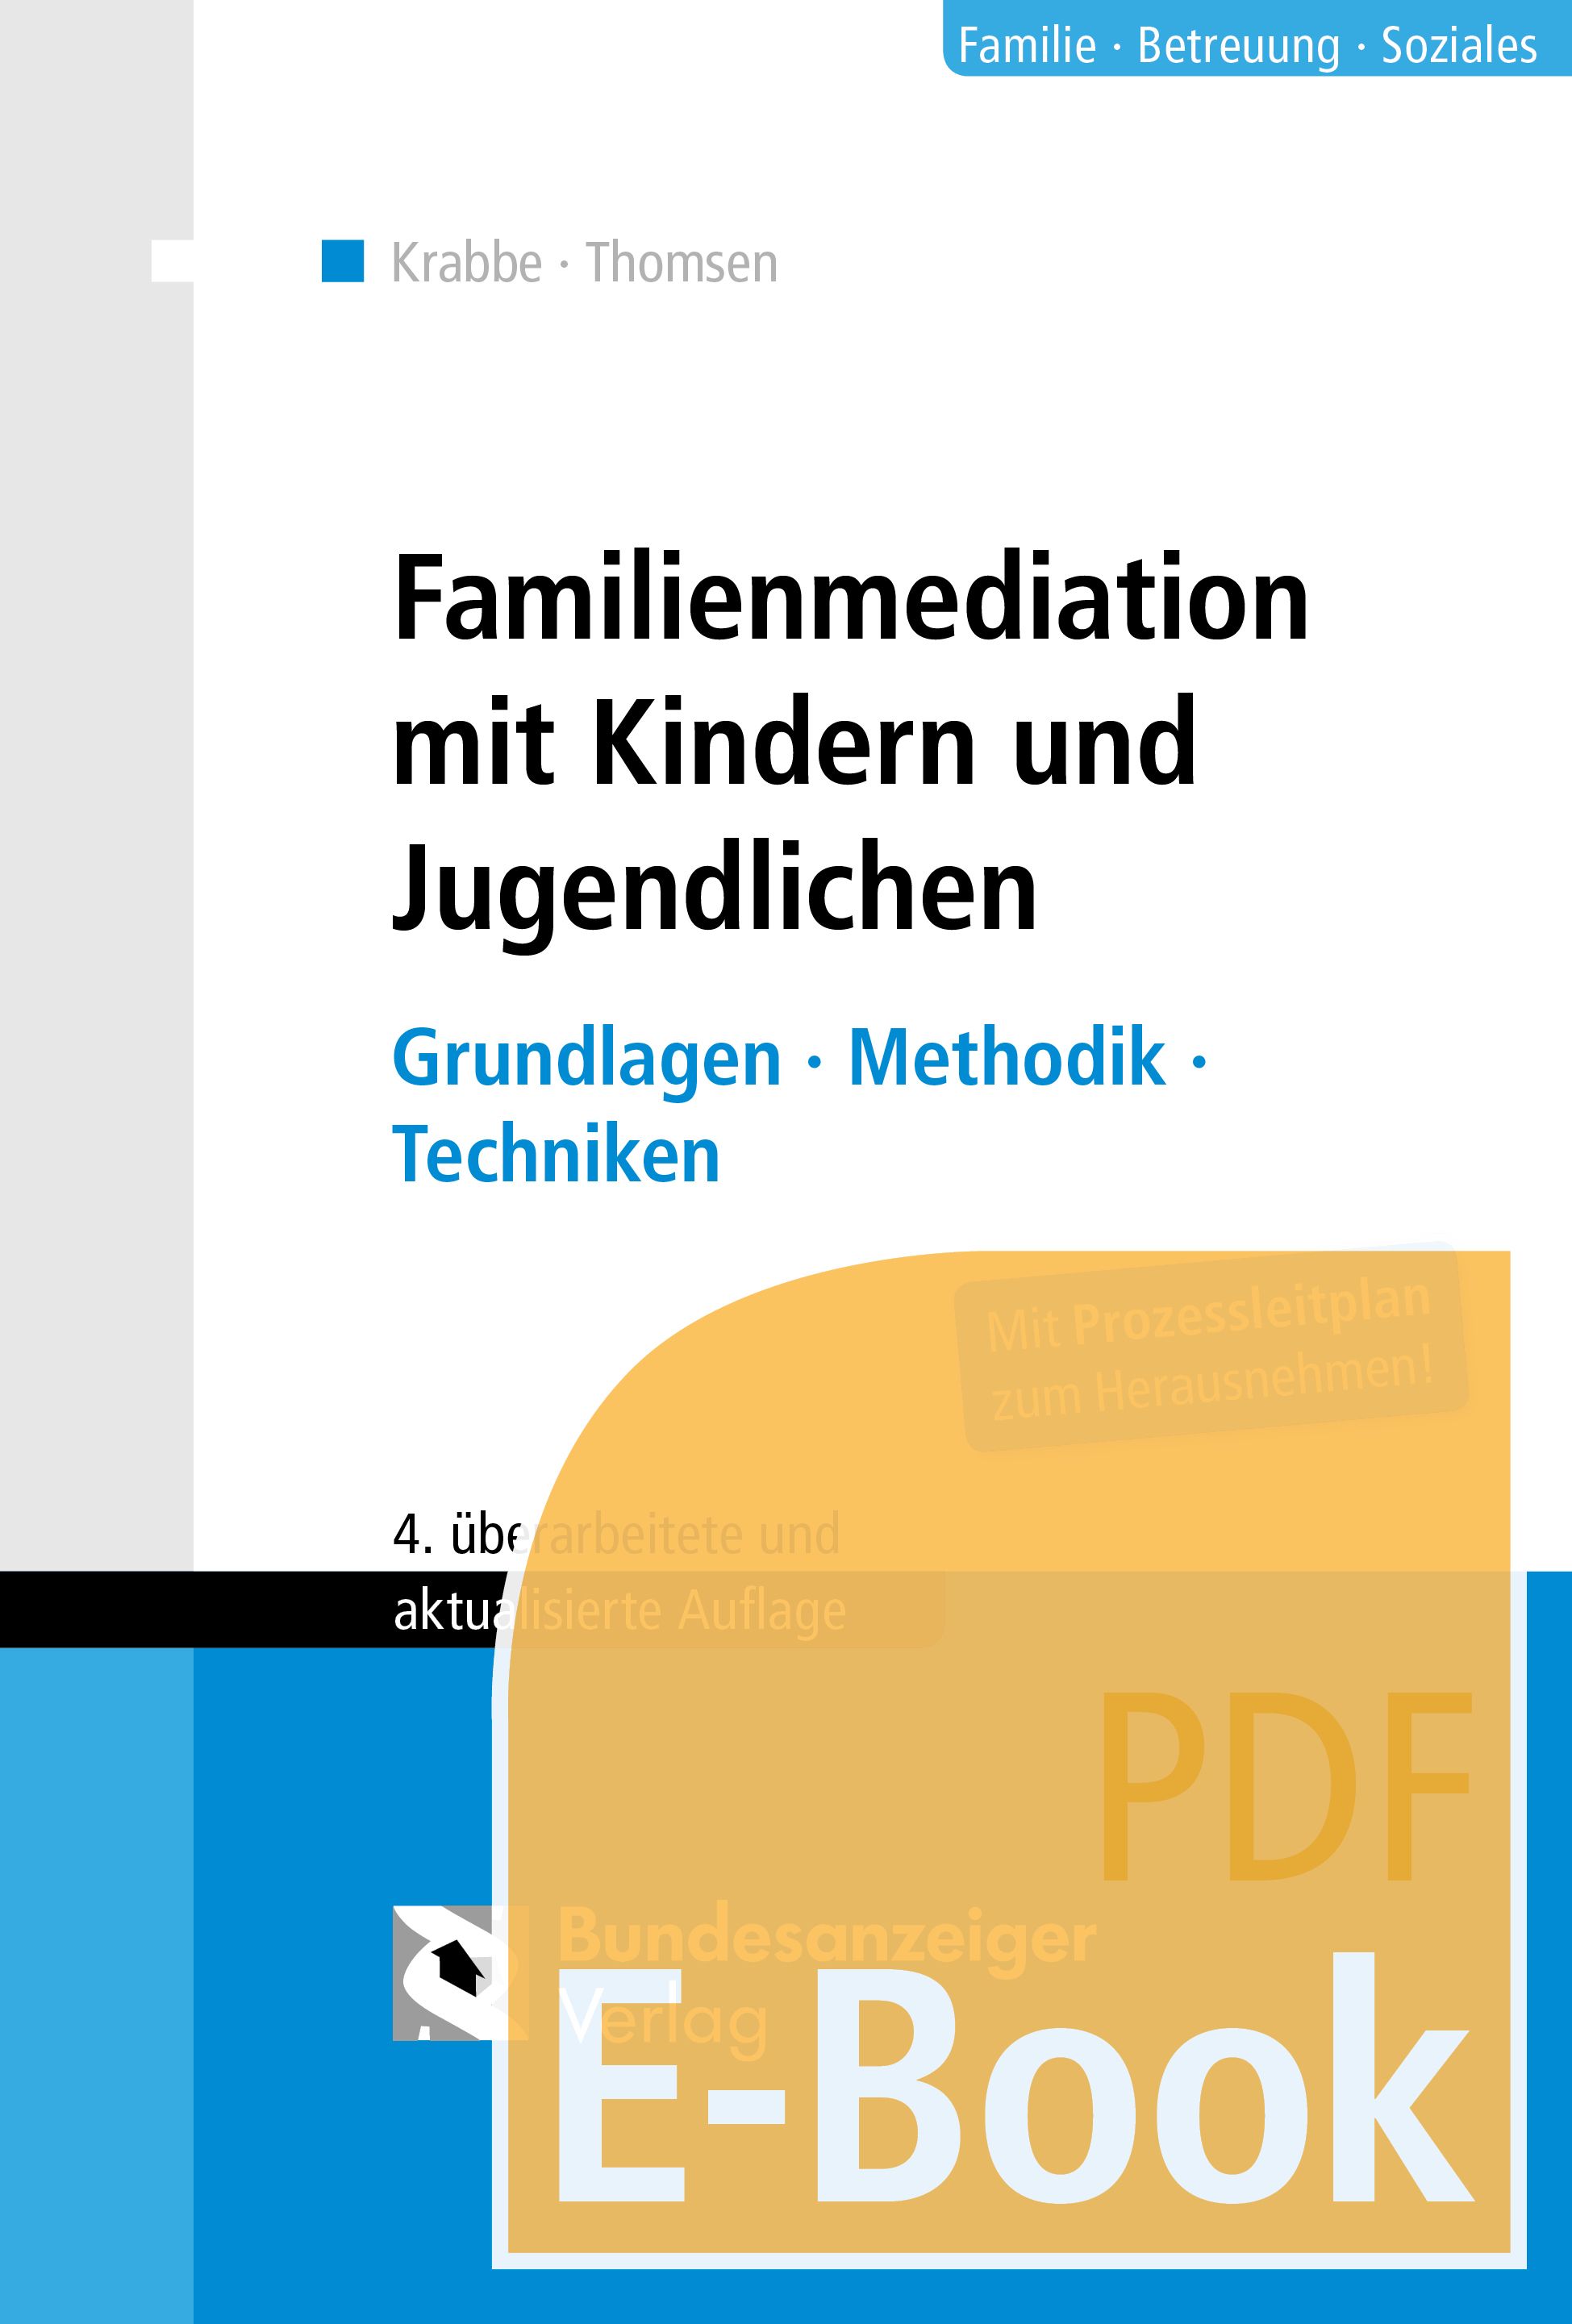 Familienmediation mit Kindern und Jugendlichen (E-Book)